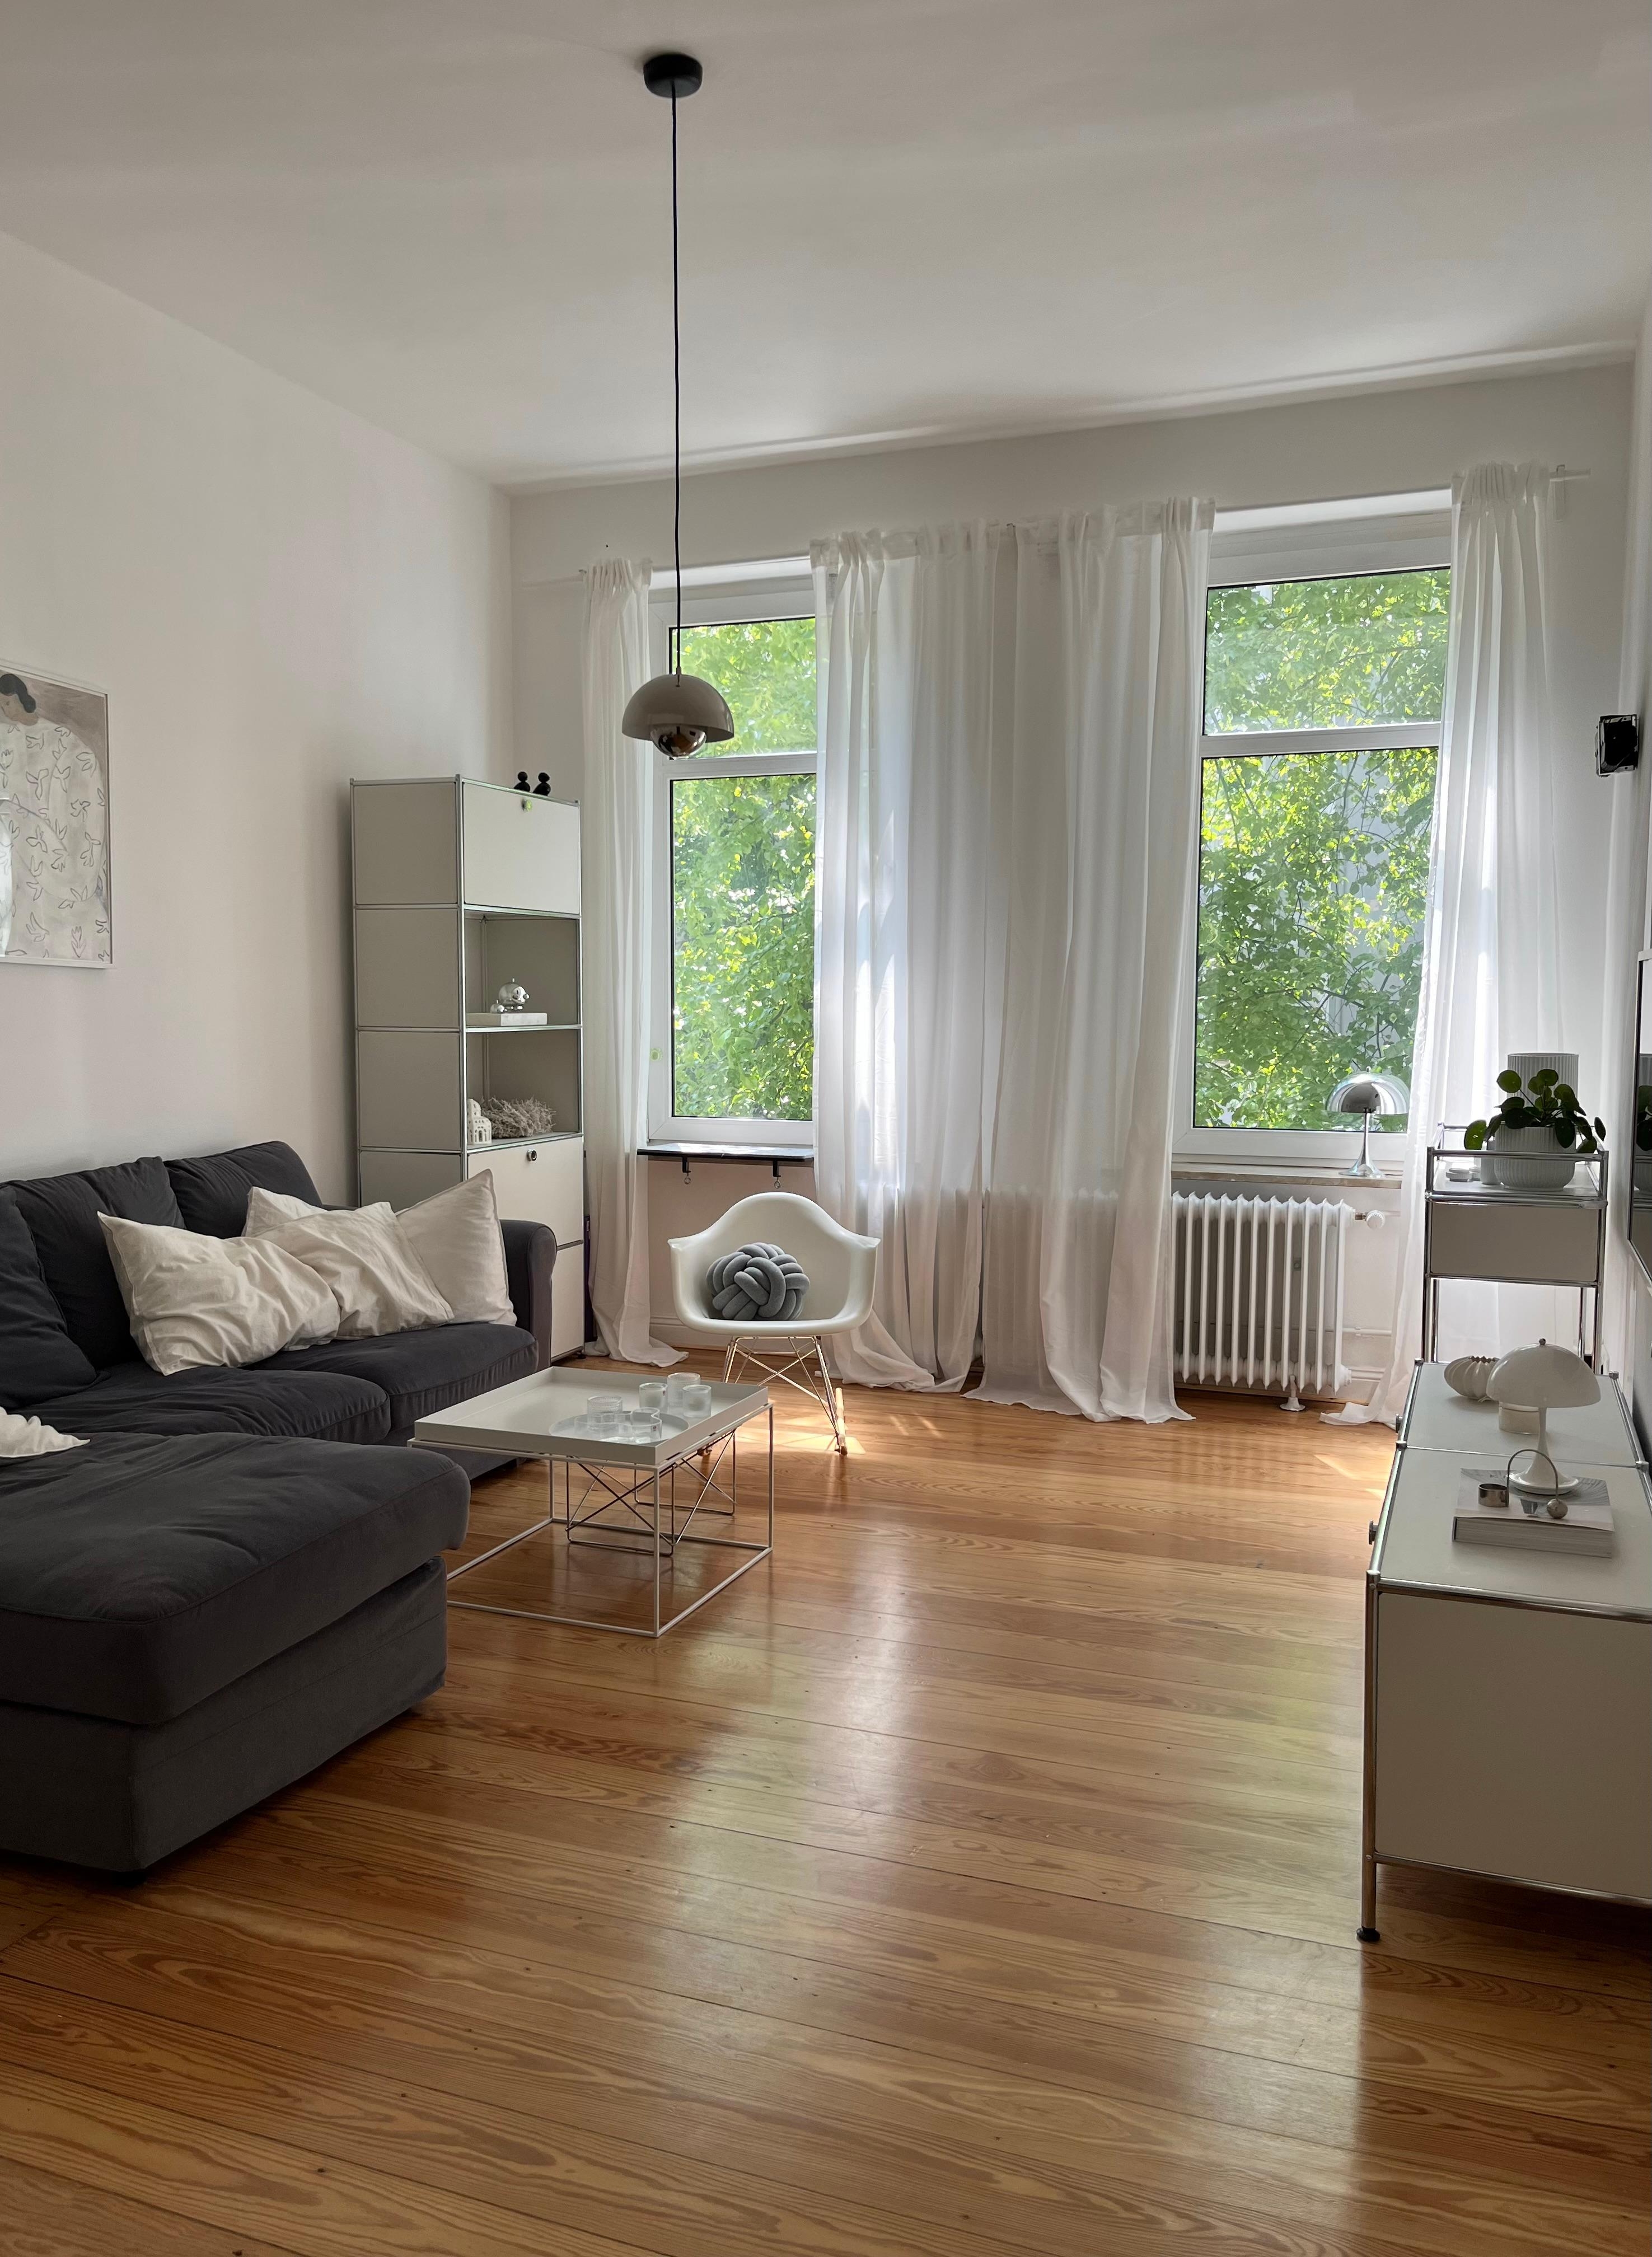 #wohnzimmer #wohnzimmerideen #minimalismus #altbauwohnung #skandinavischwohnen #inneneinrichtung 